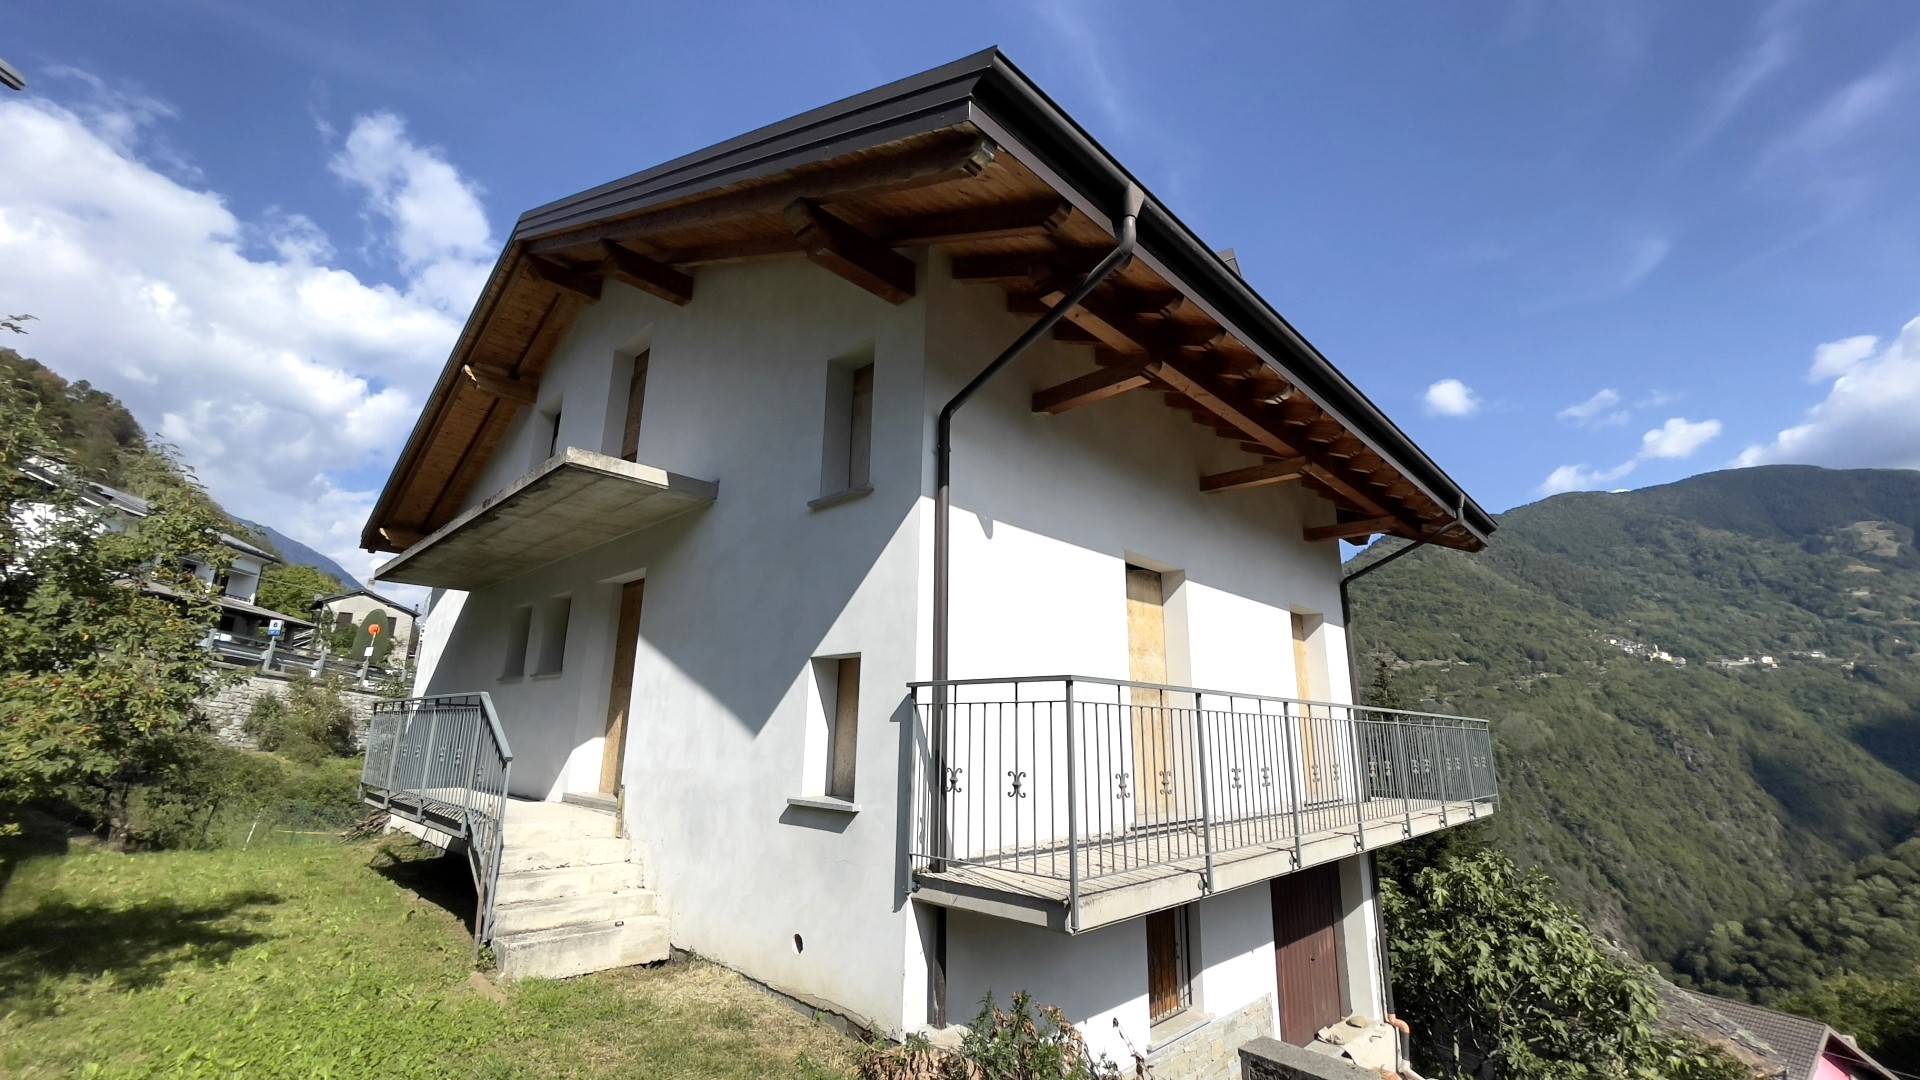 Villa in vendita a Cosio Valtellino, 6 locali, zona Zona: Sacco, prezzo € 185.000 | CambioCasa.it